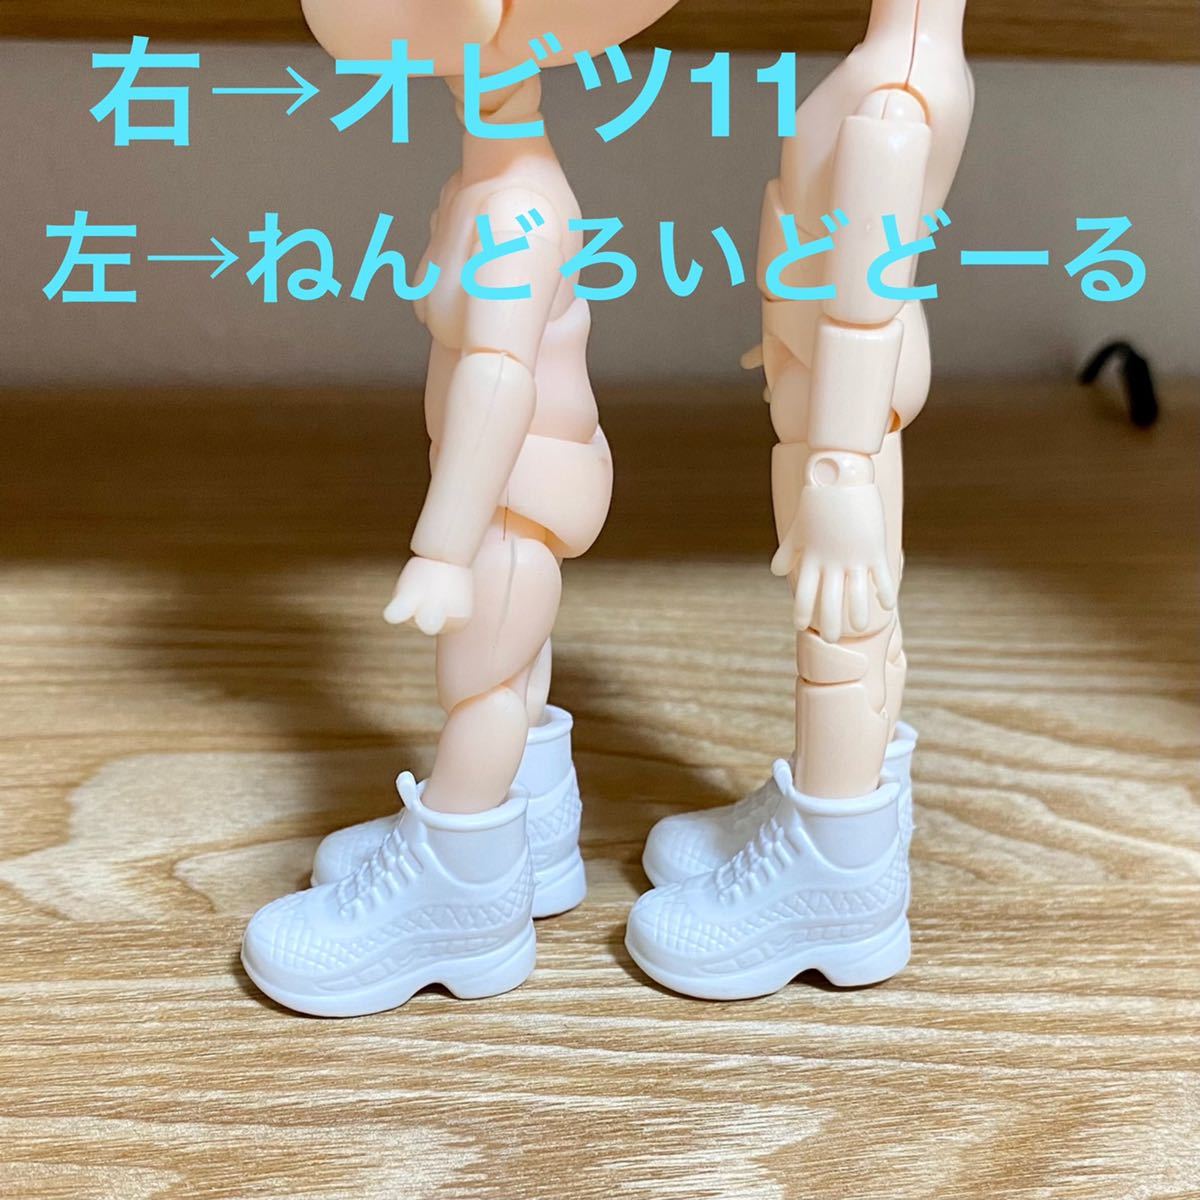  спортивные туфли ботинки 2 пара чёрный белый Obi tsu11 Licca-chan Barbie кукла Blythe .......-.1/6 1/12 кукла Obi tsu22 27 Jenny 